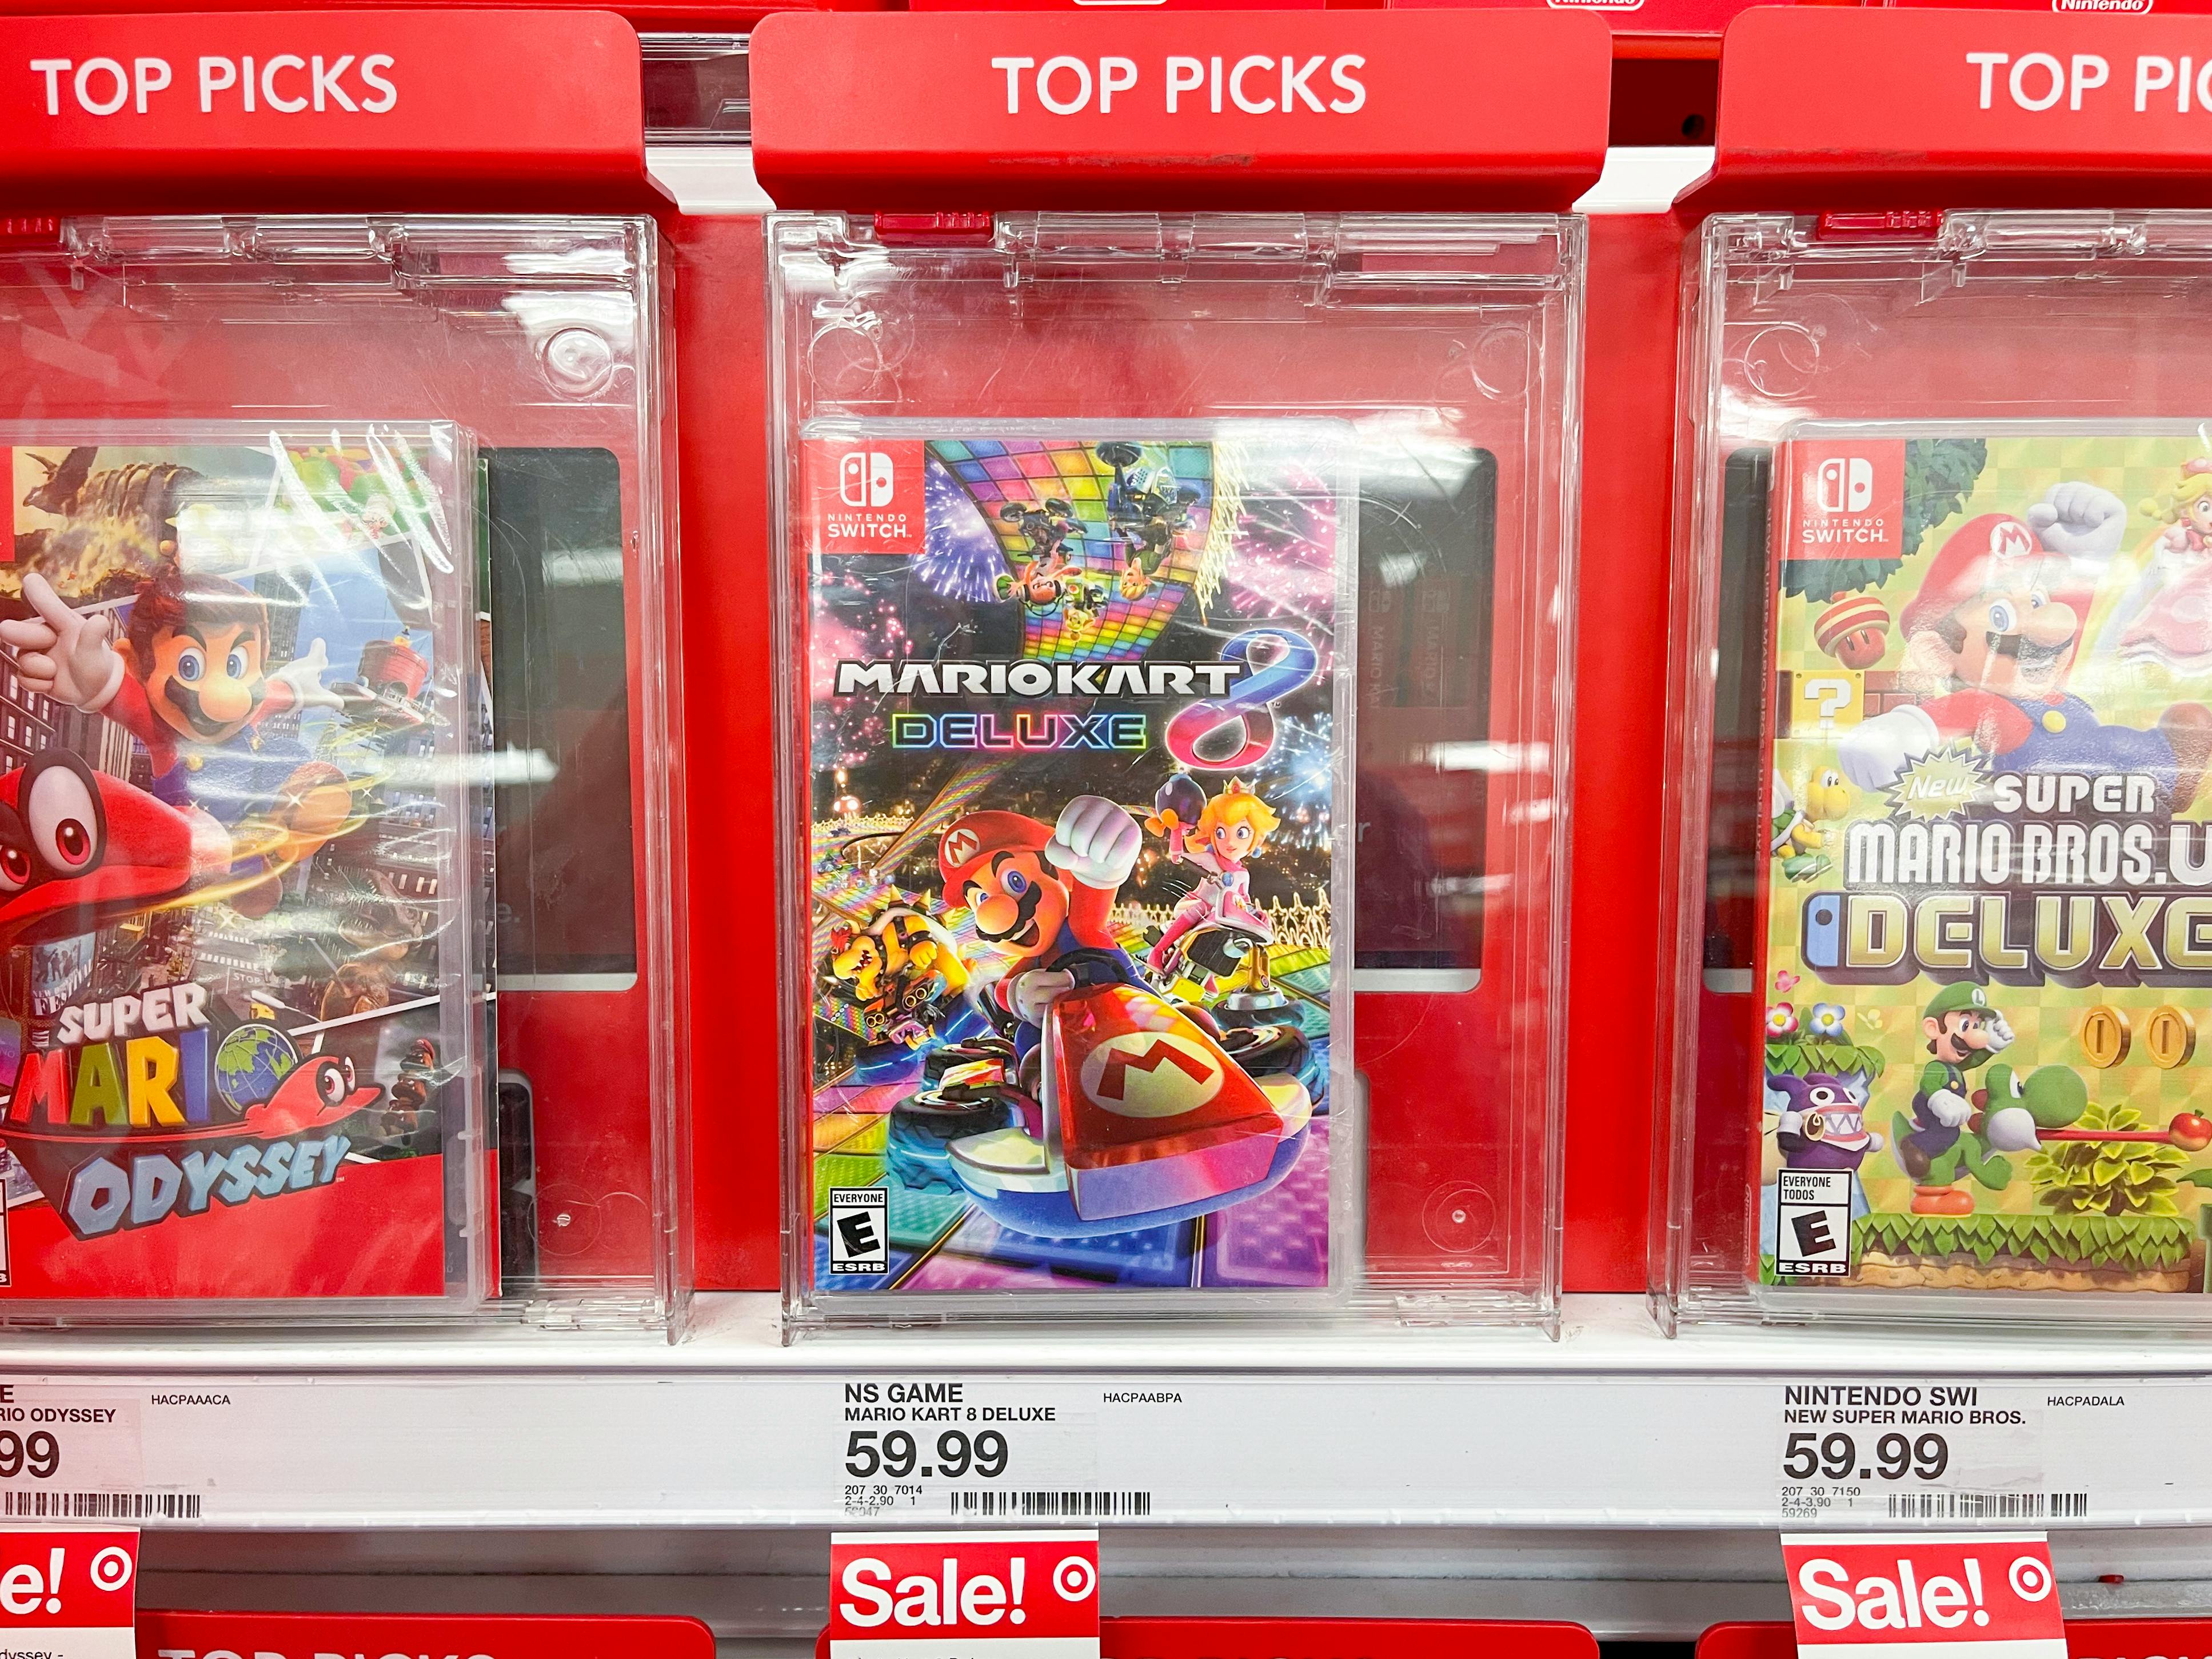 Nintendo Switch Mariokart video games at Target